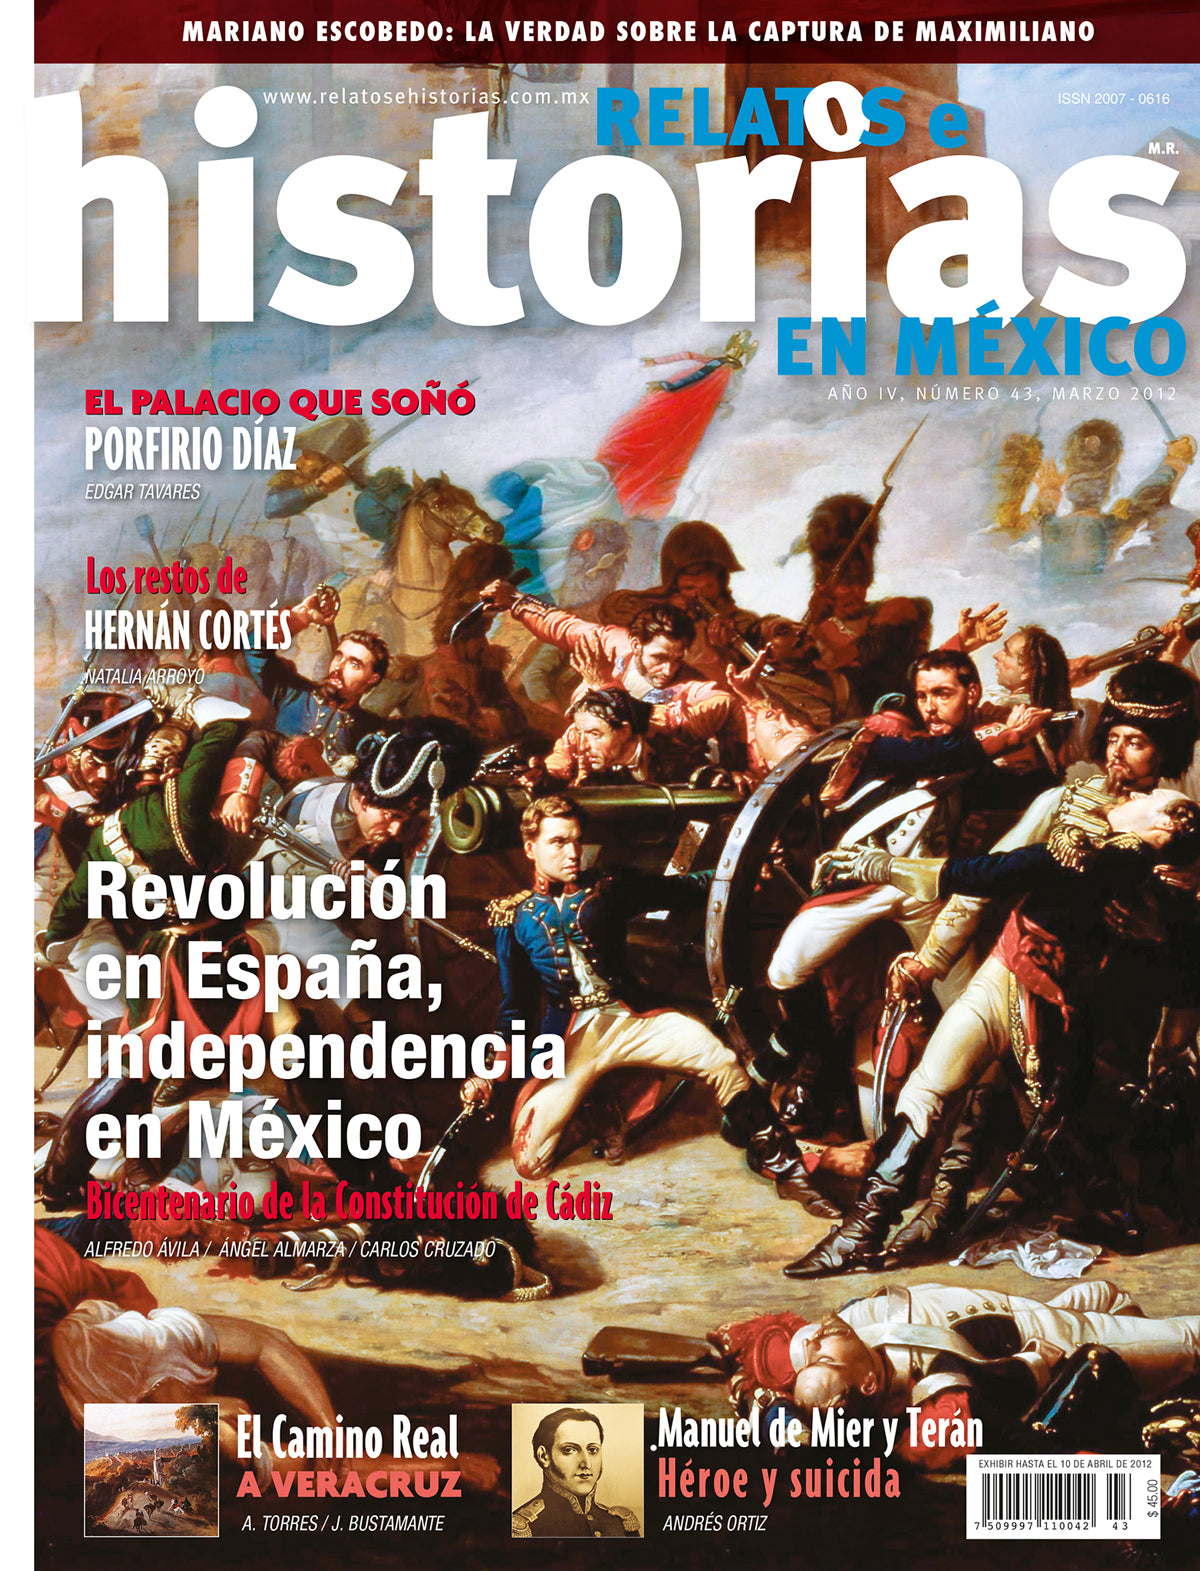 Revolución en España, independencia de México